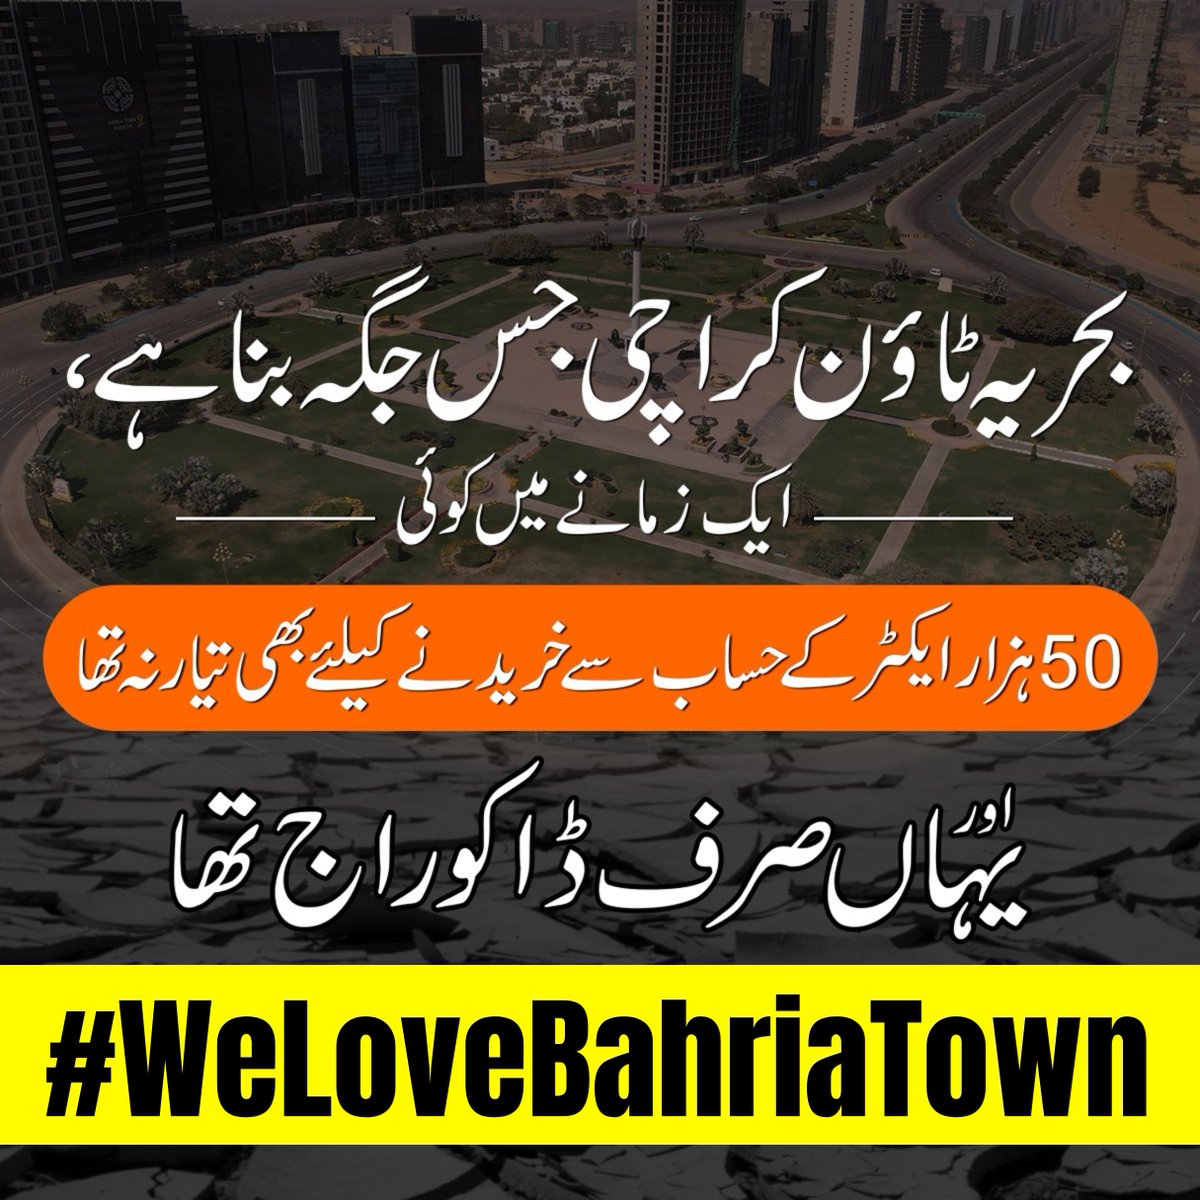 کاش ایسا ہوکہ پورا پاکستان بحریہ ٹاؤن کراچی جیسا جدید اور خوبصورت ہوجائے
#BahriaTownKarachi #BahriaTown #MalikRiaz #WeLoveMalikRiaz #WeStandWithMalikRiaz
#WeLoveBahriaTown #WeStandWithBahriaTown